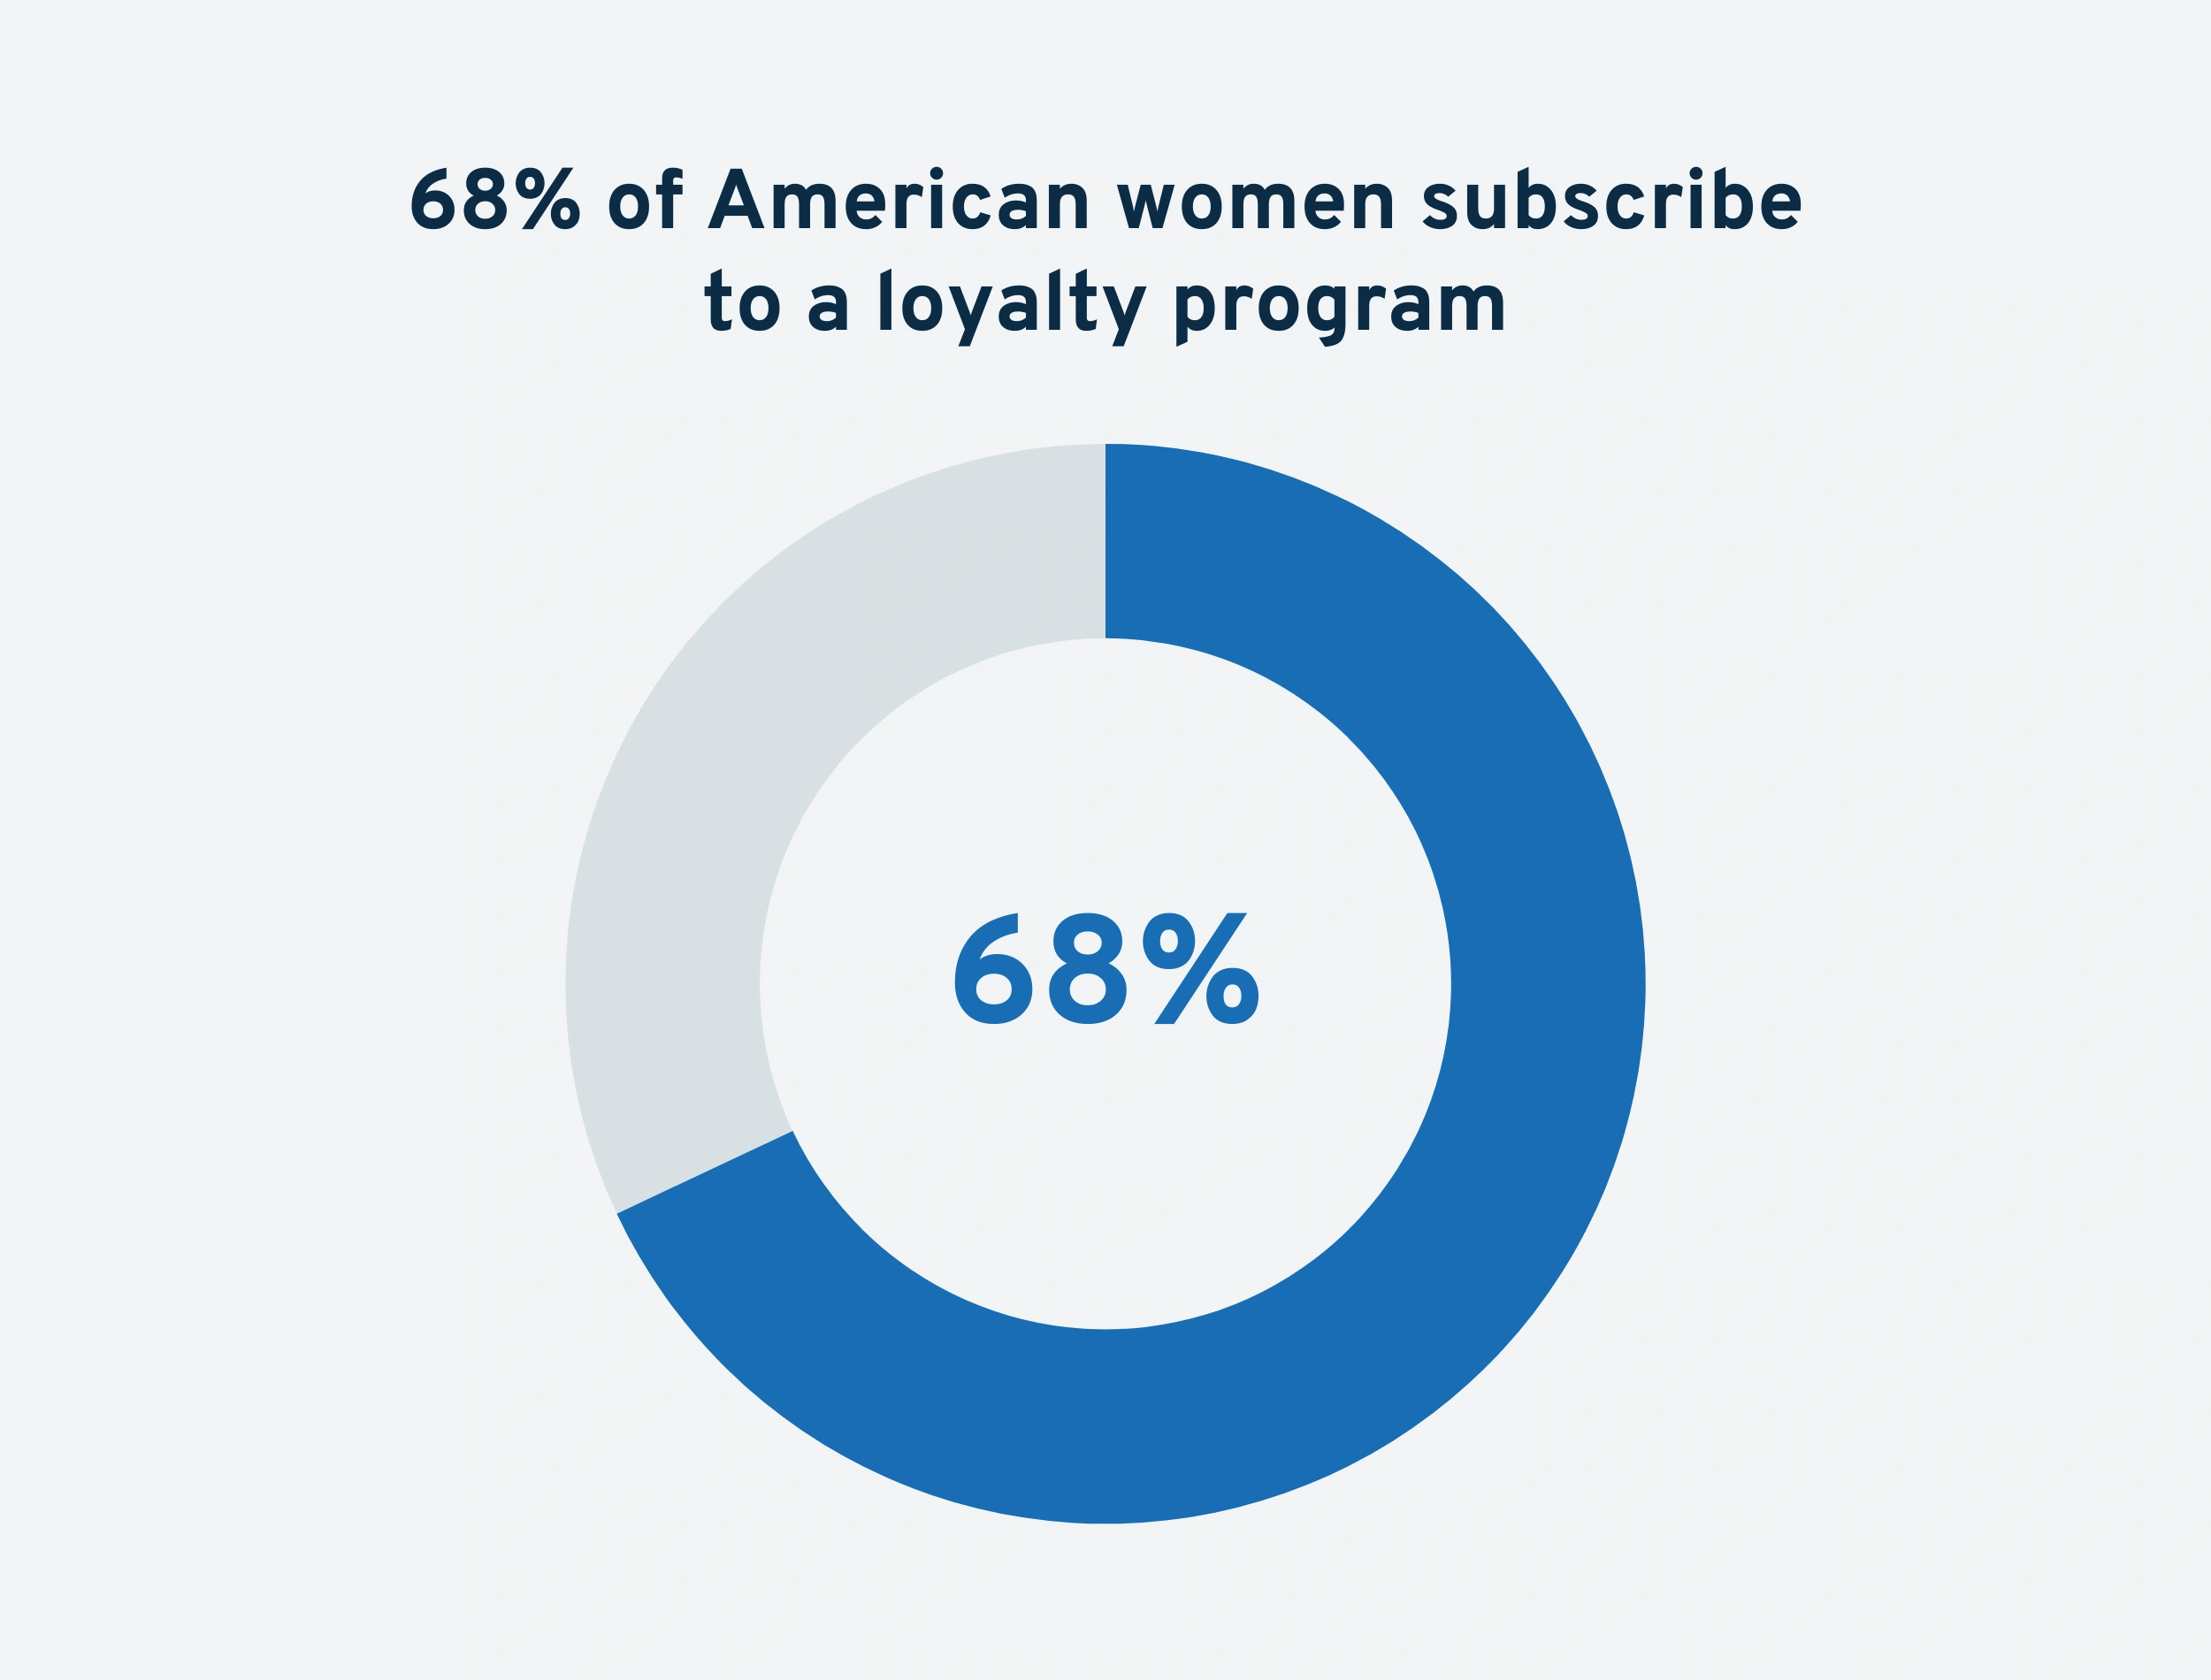 us-women-in-loyalty-programs-min.png